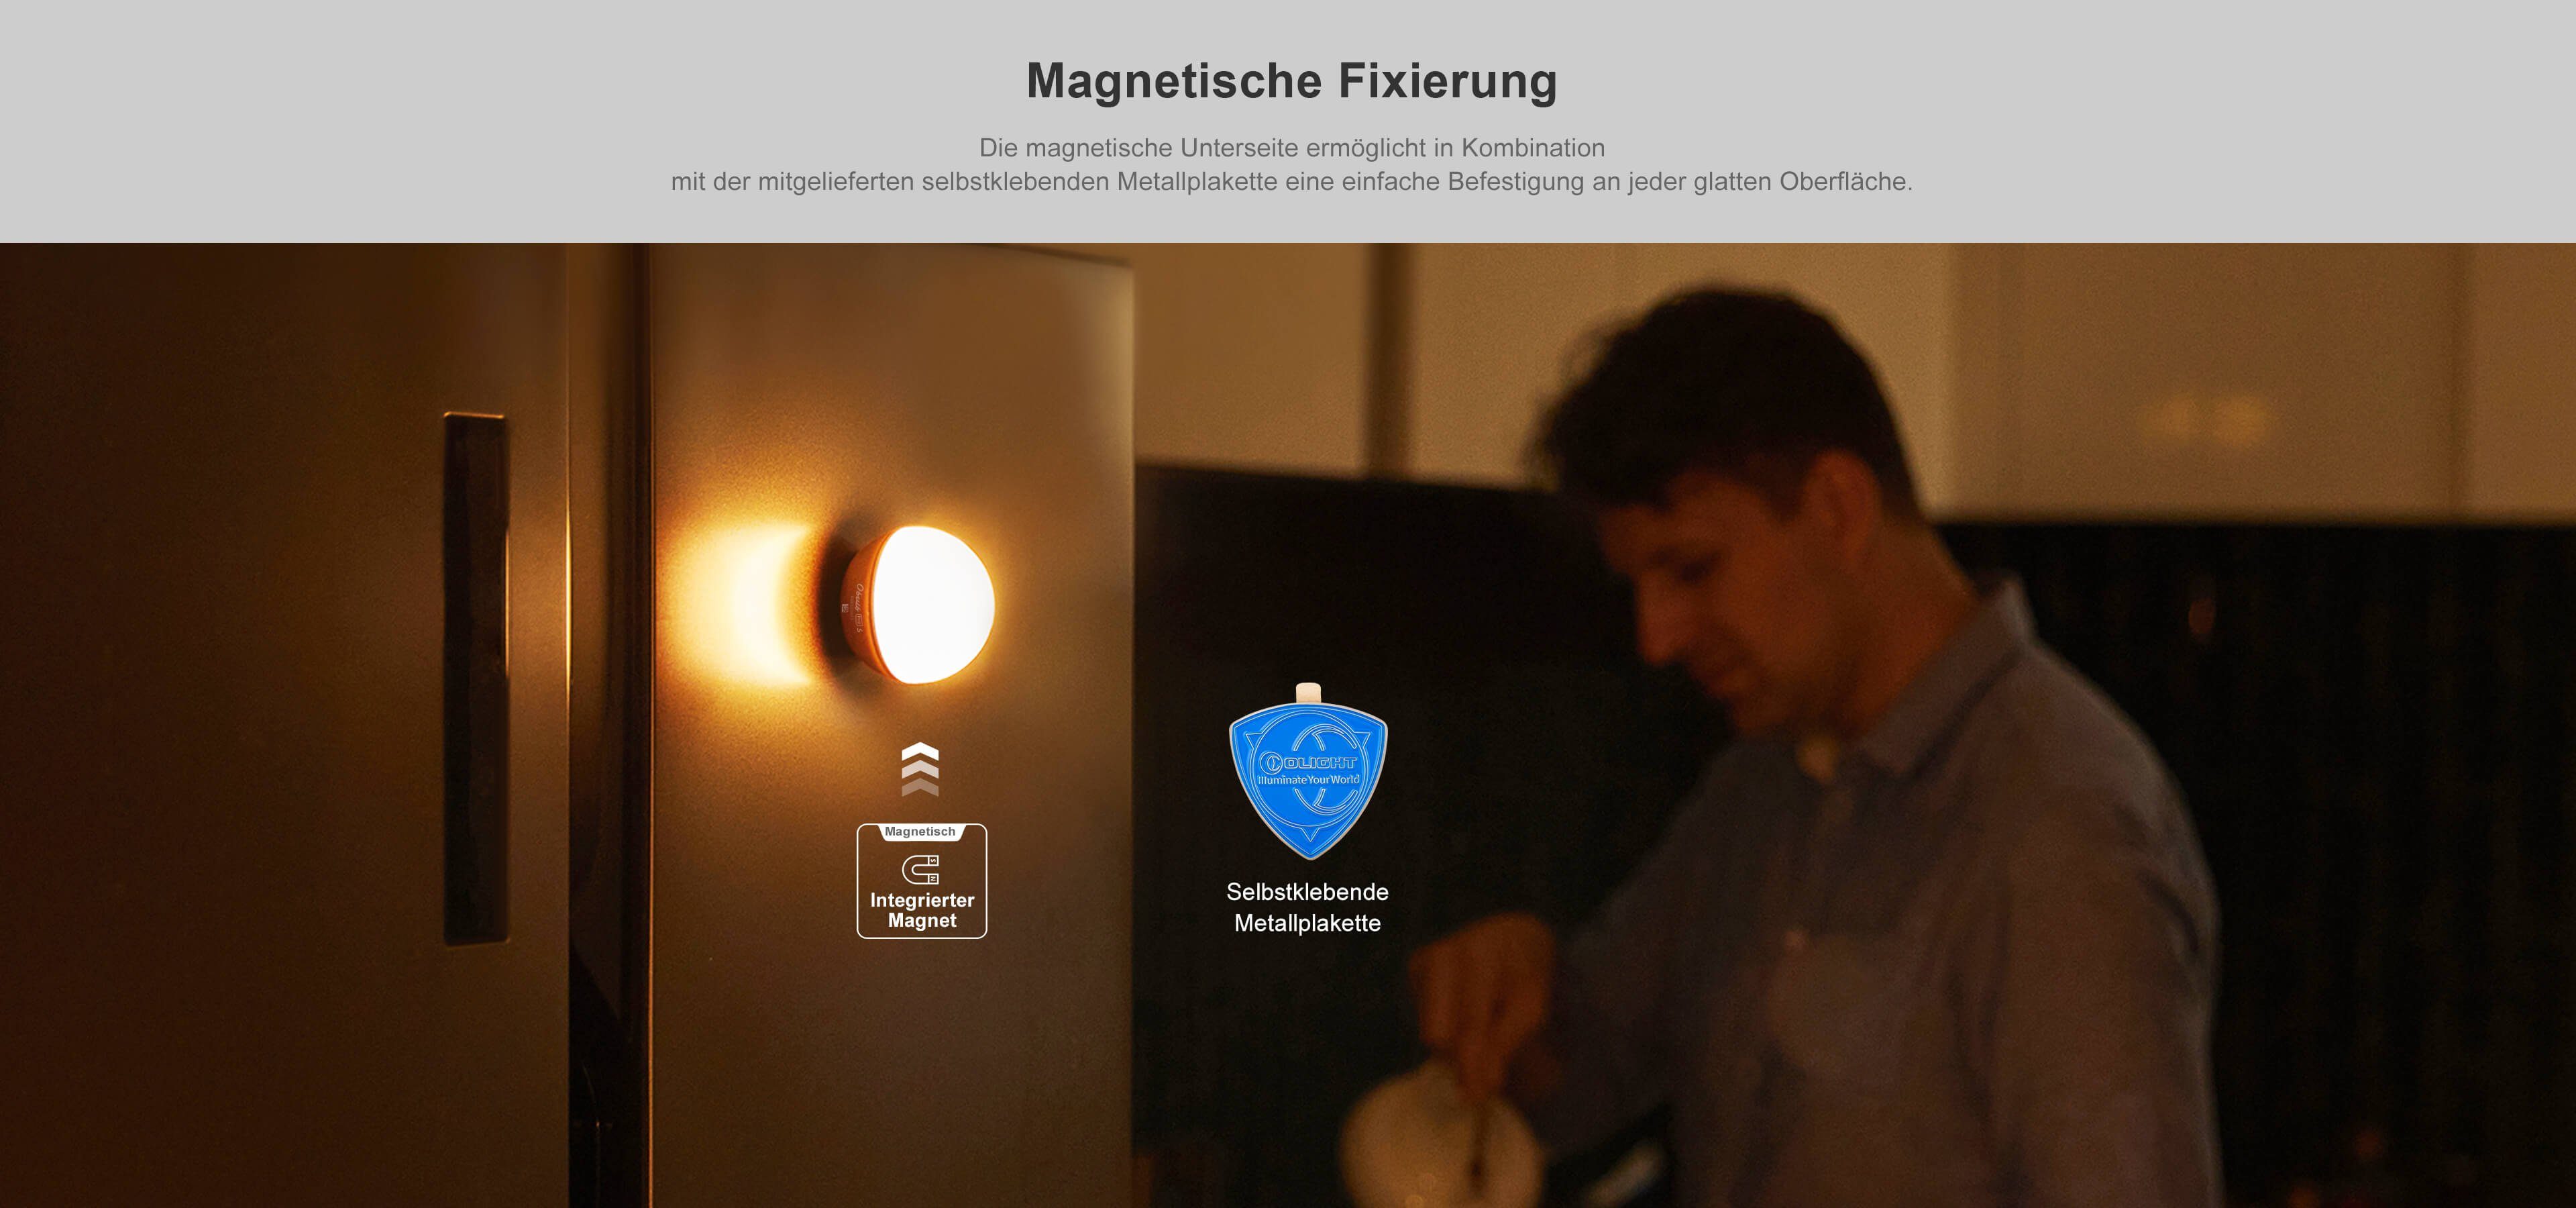 und OLIGHT Dynamische Farbenfrohe Nachtlicht App-Steuerung mit Obulb Grau S Lichtkugel Pro